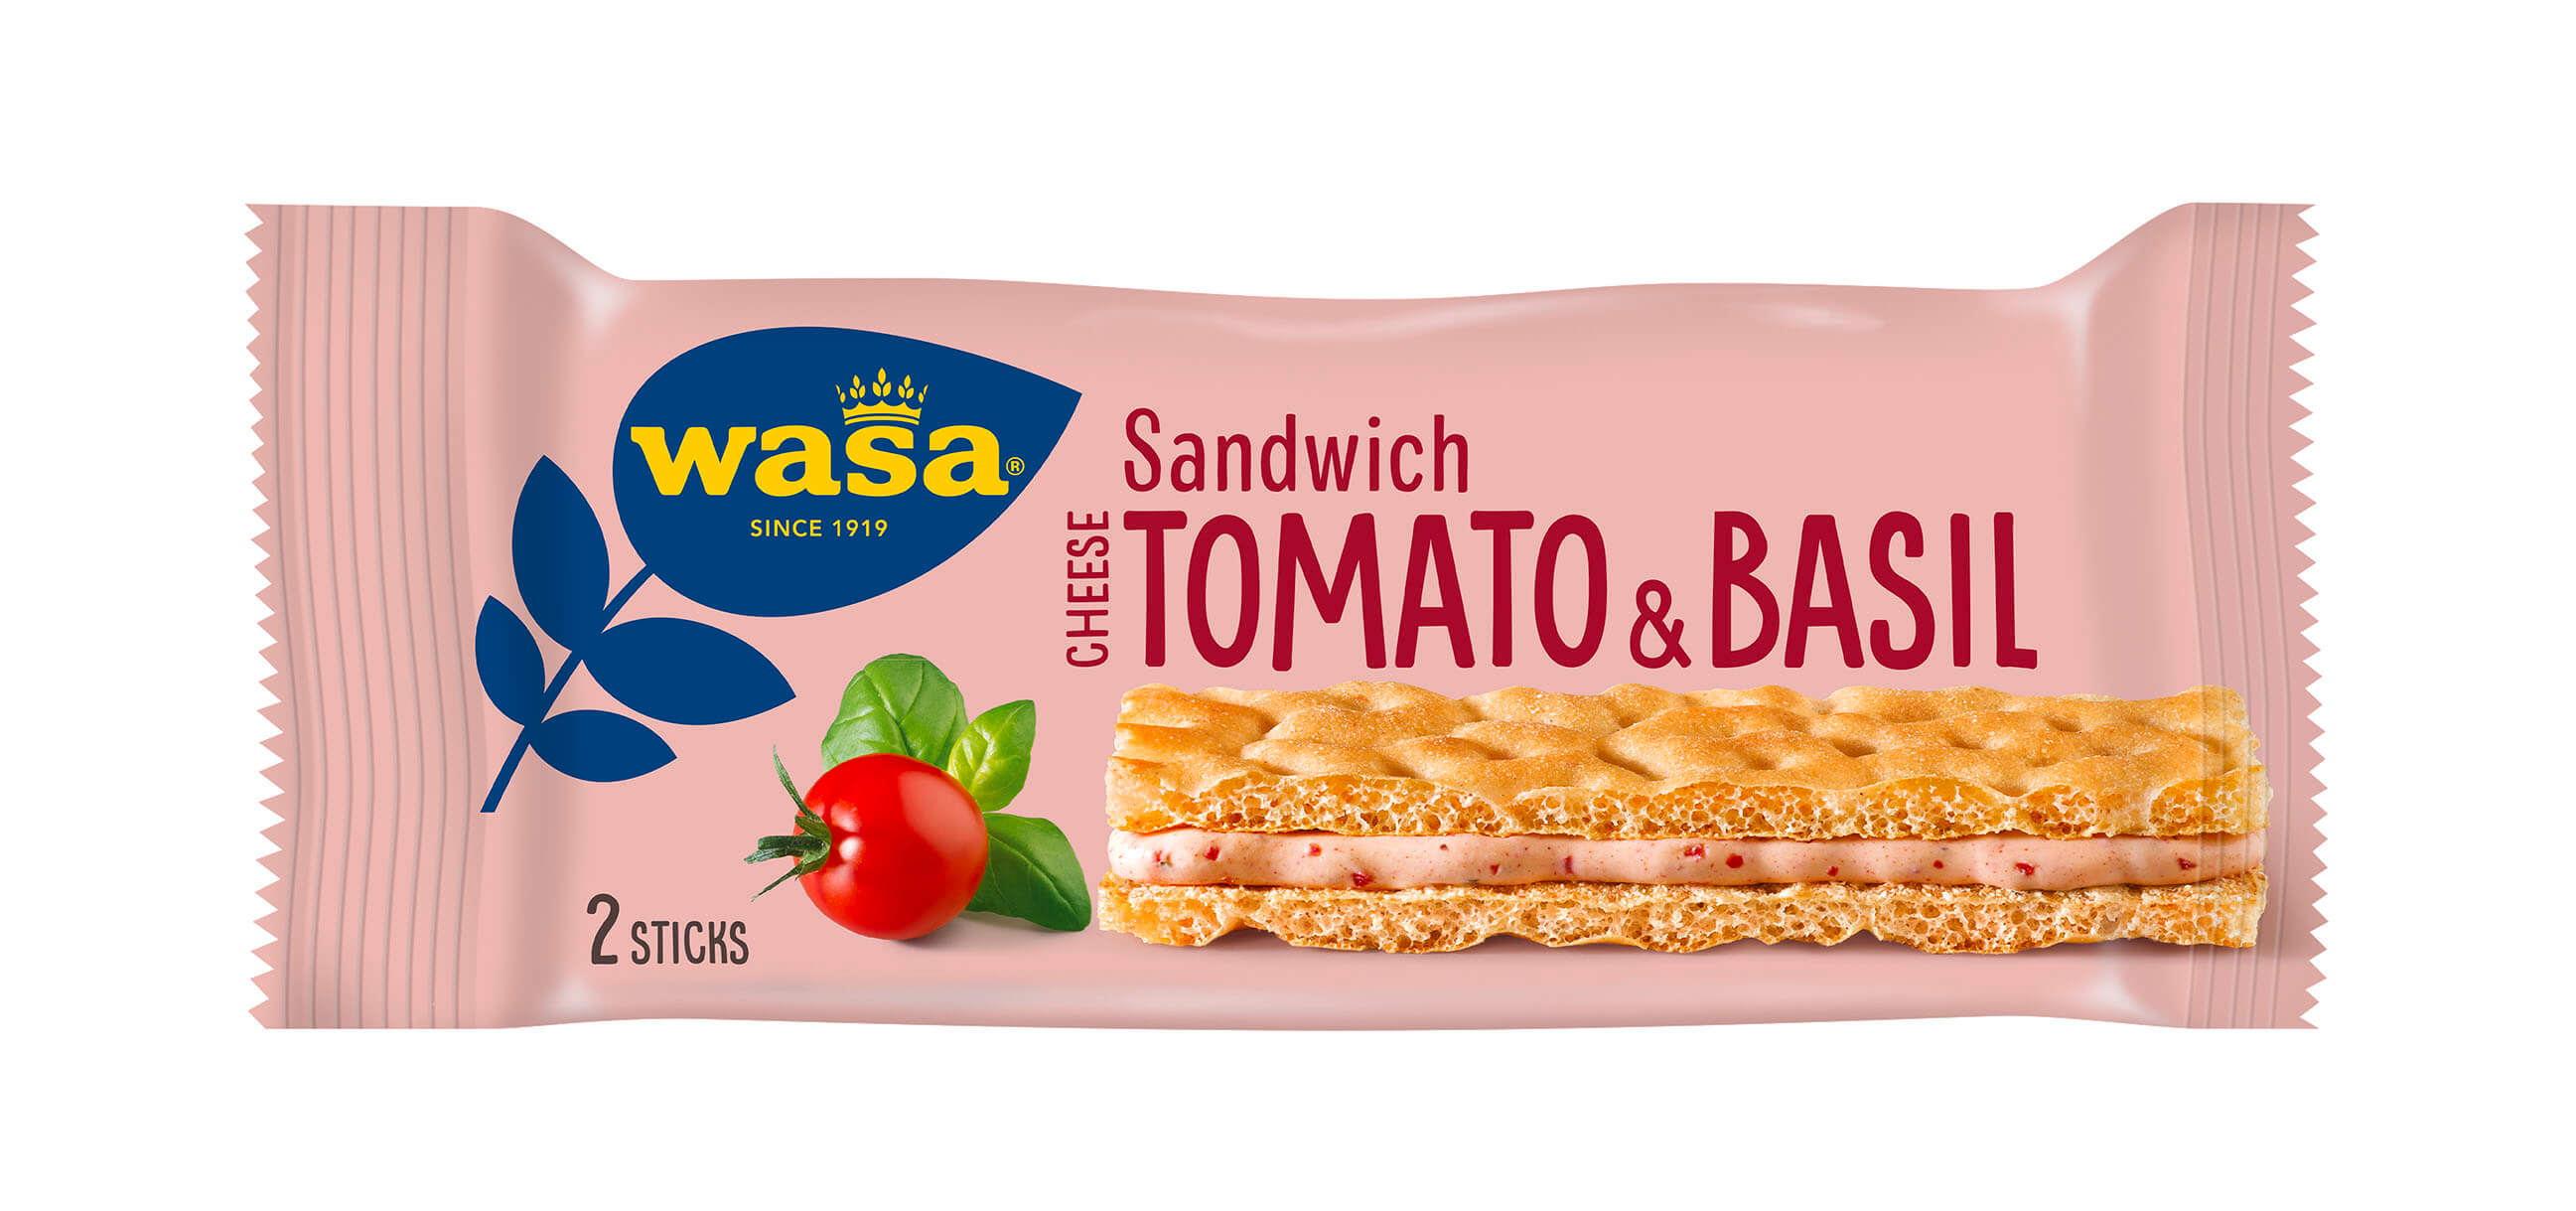 Wasa Sandwich Tomato & Basil - Upptäck det perfekta mellanmålet, gott knäckebröd med krämig fyllning. Utmärkt som ett lätt mellanmål på språng och som snabba mellanmål efter skolan eller innan träning.